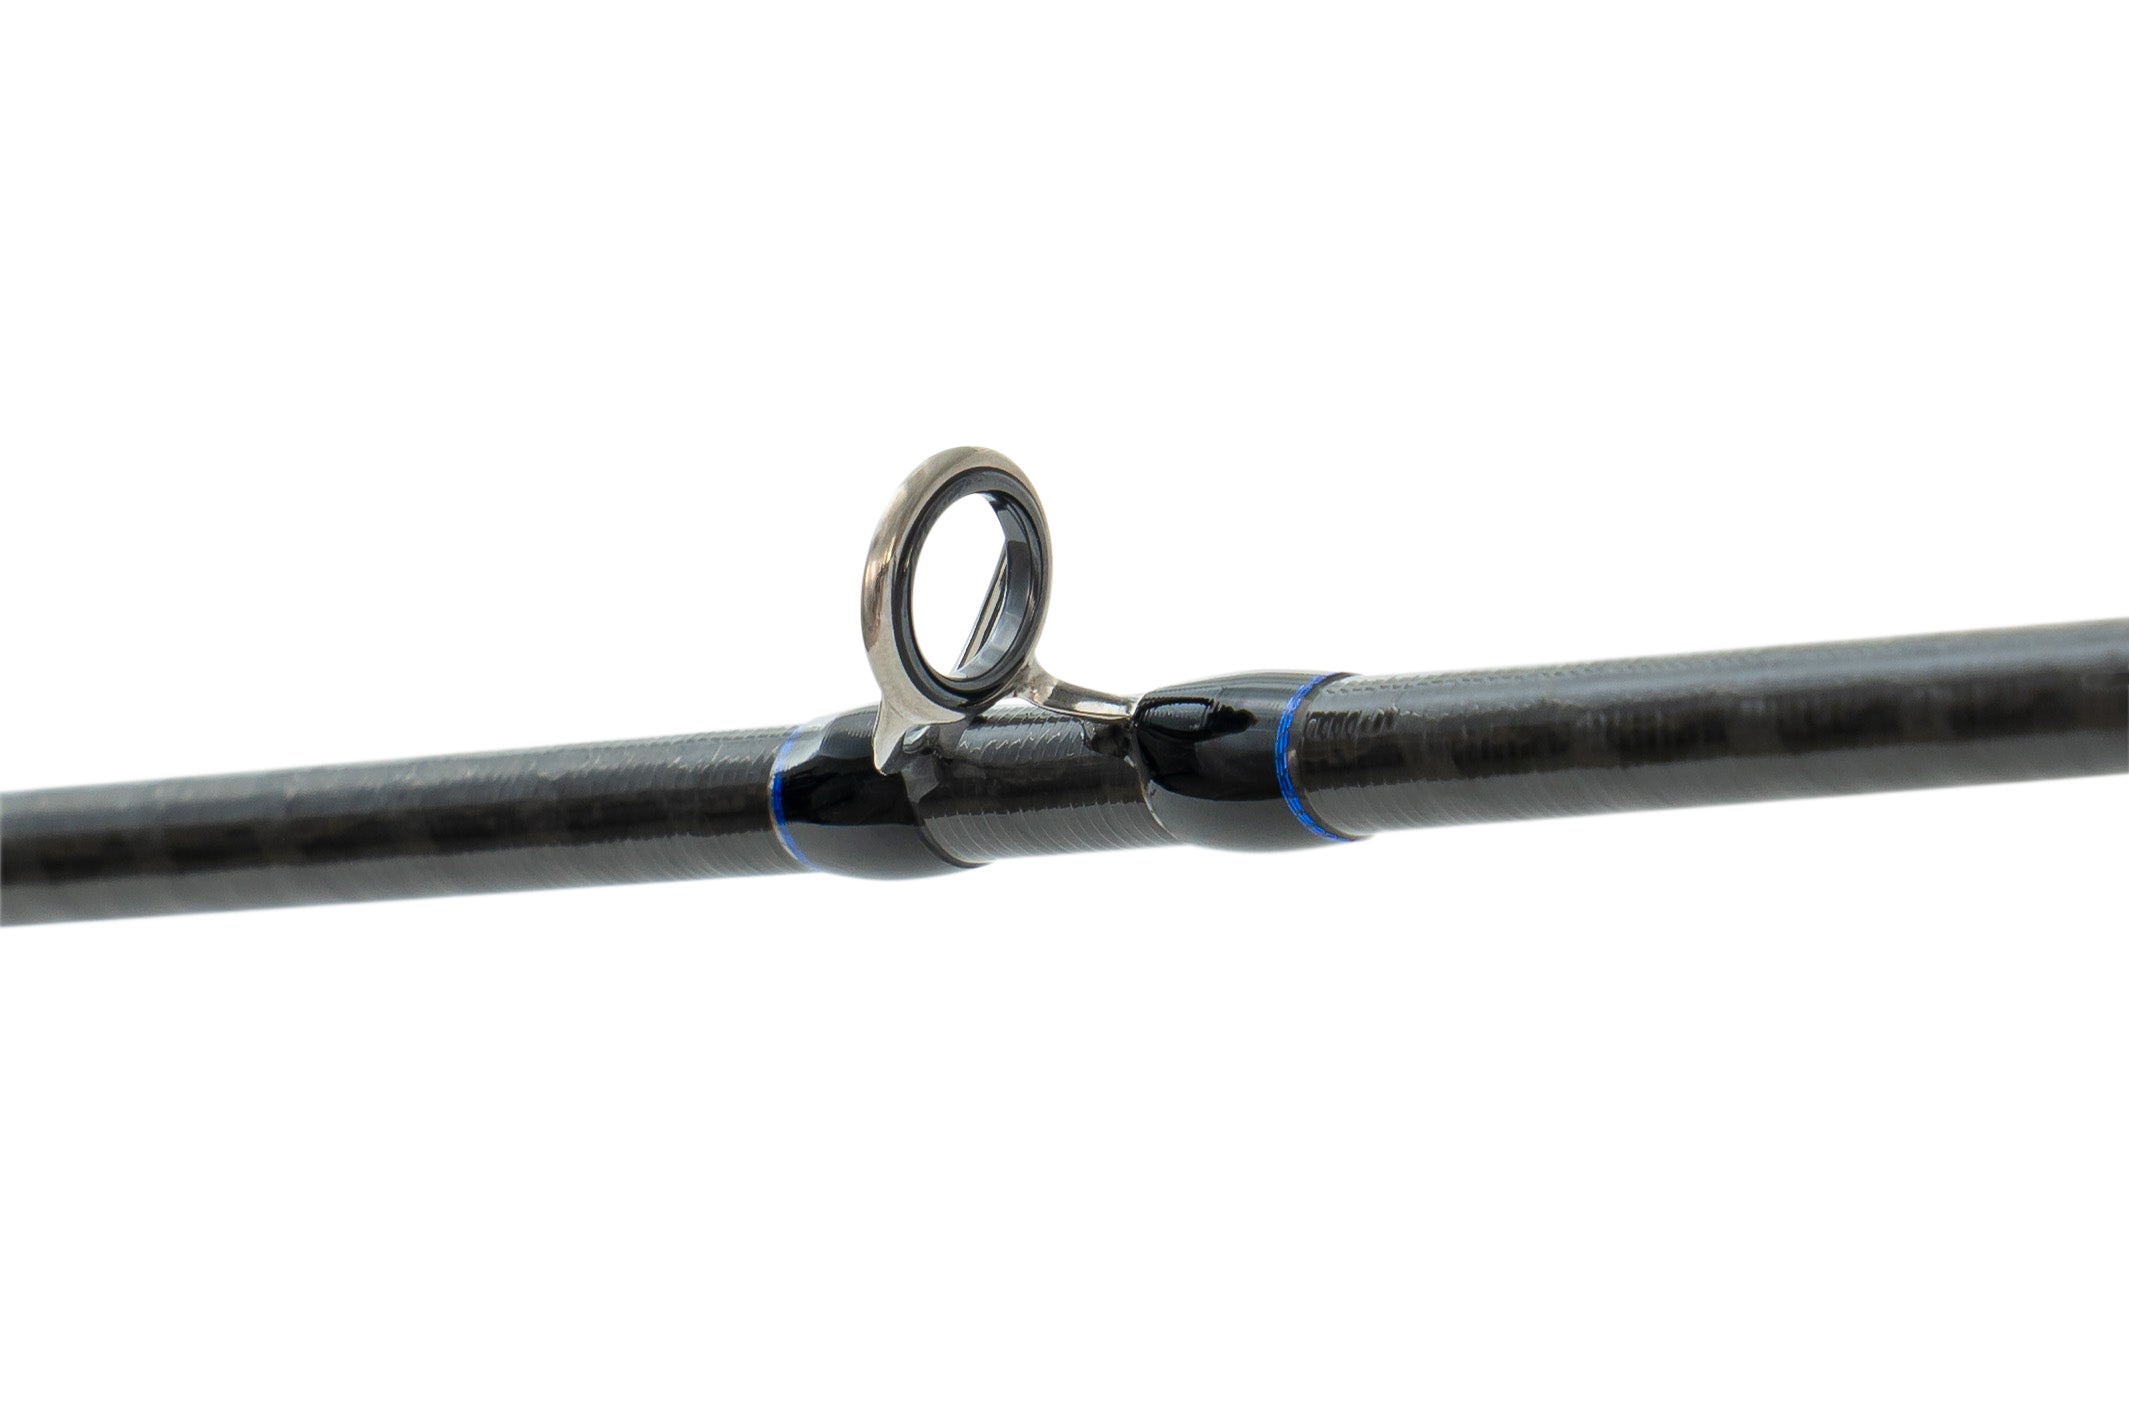 Daiwa Saltiga Slow Pitch Jigging Fishing Rods (Model: SGSL61ML